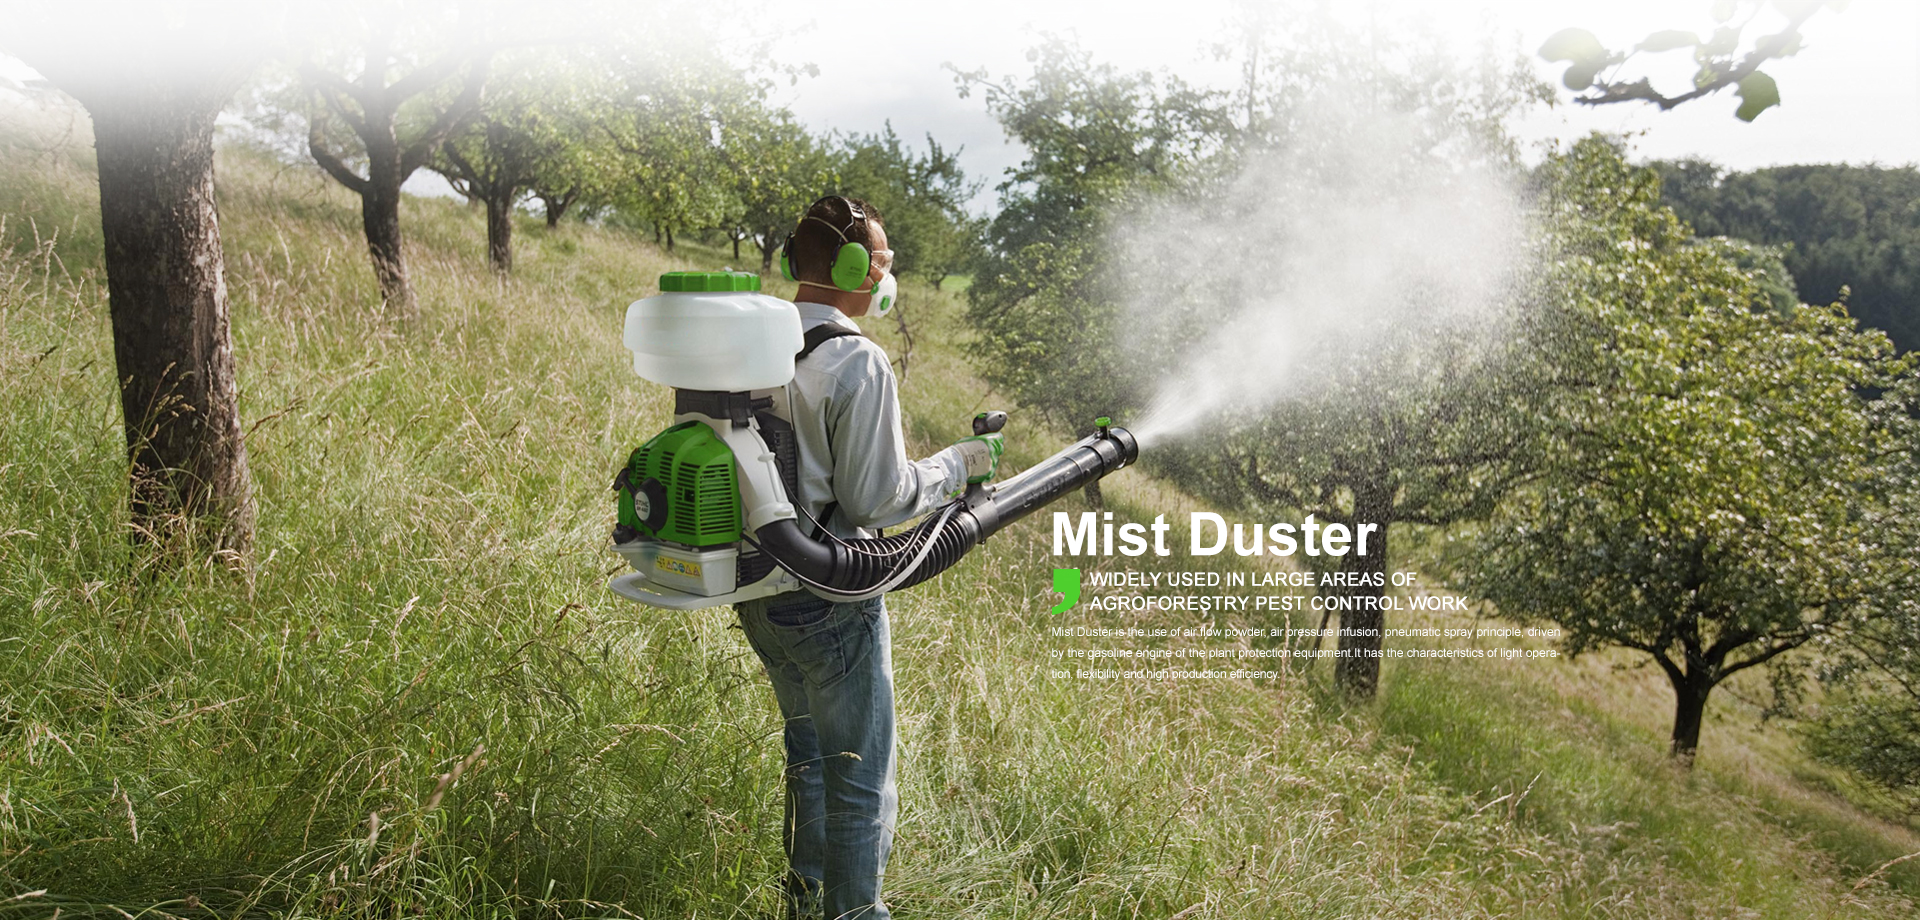 Mist Duster